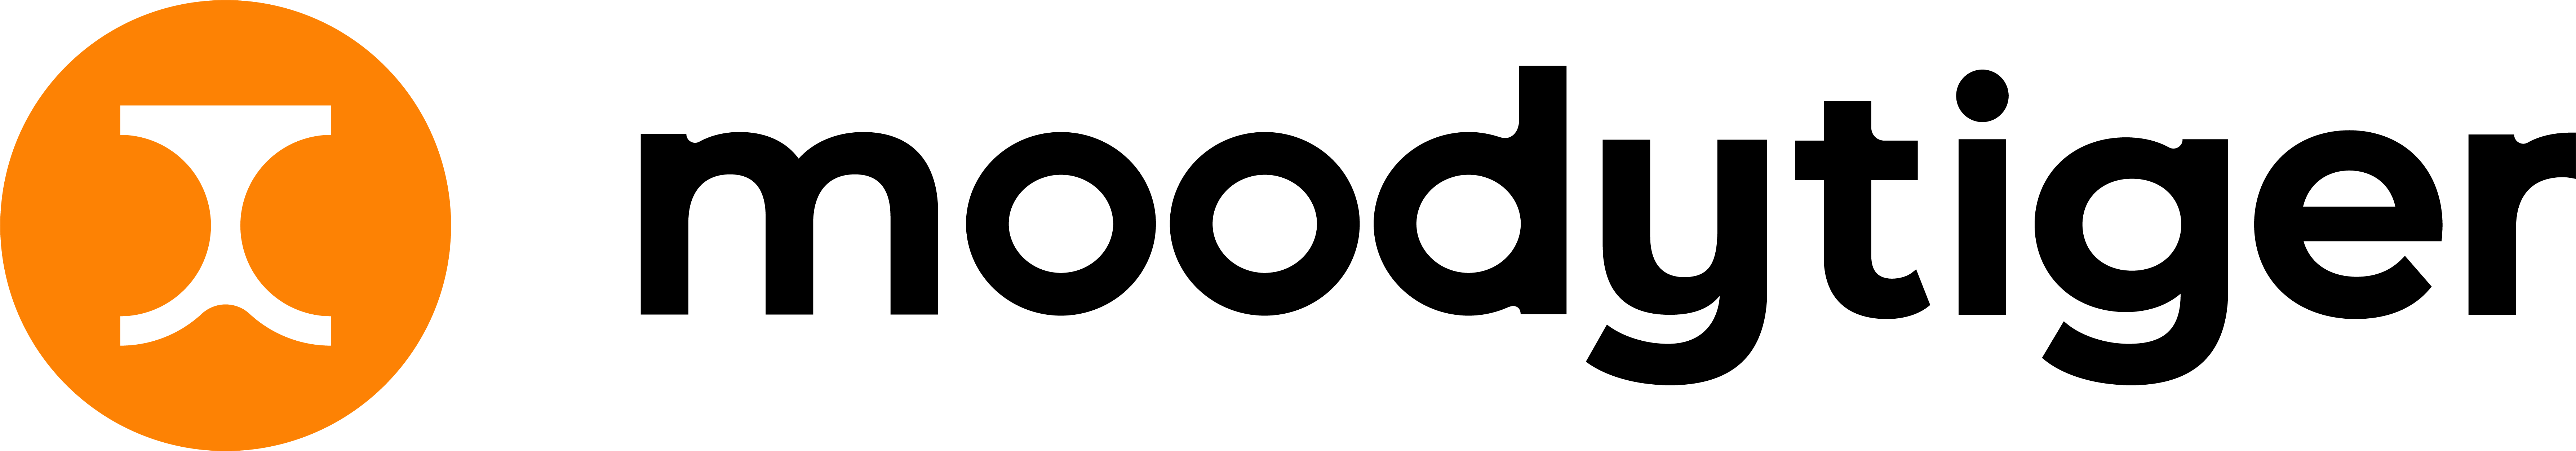 moodytiger logo